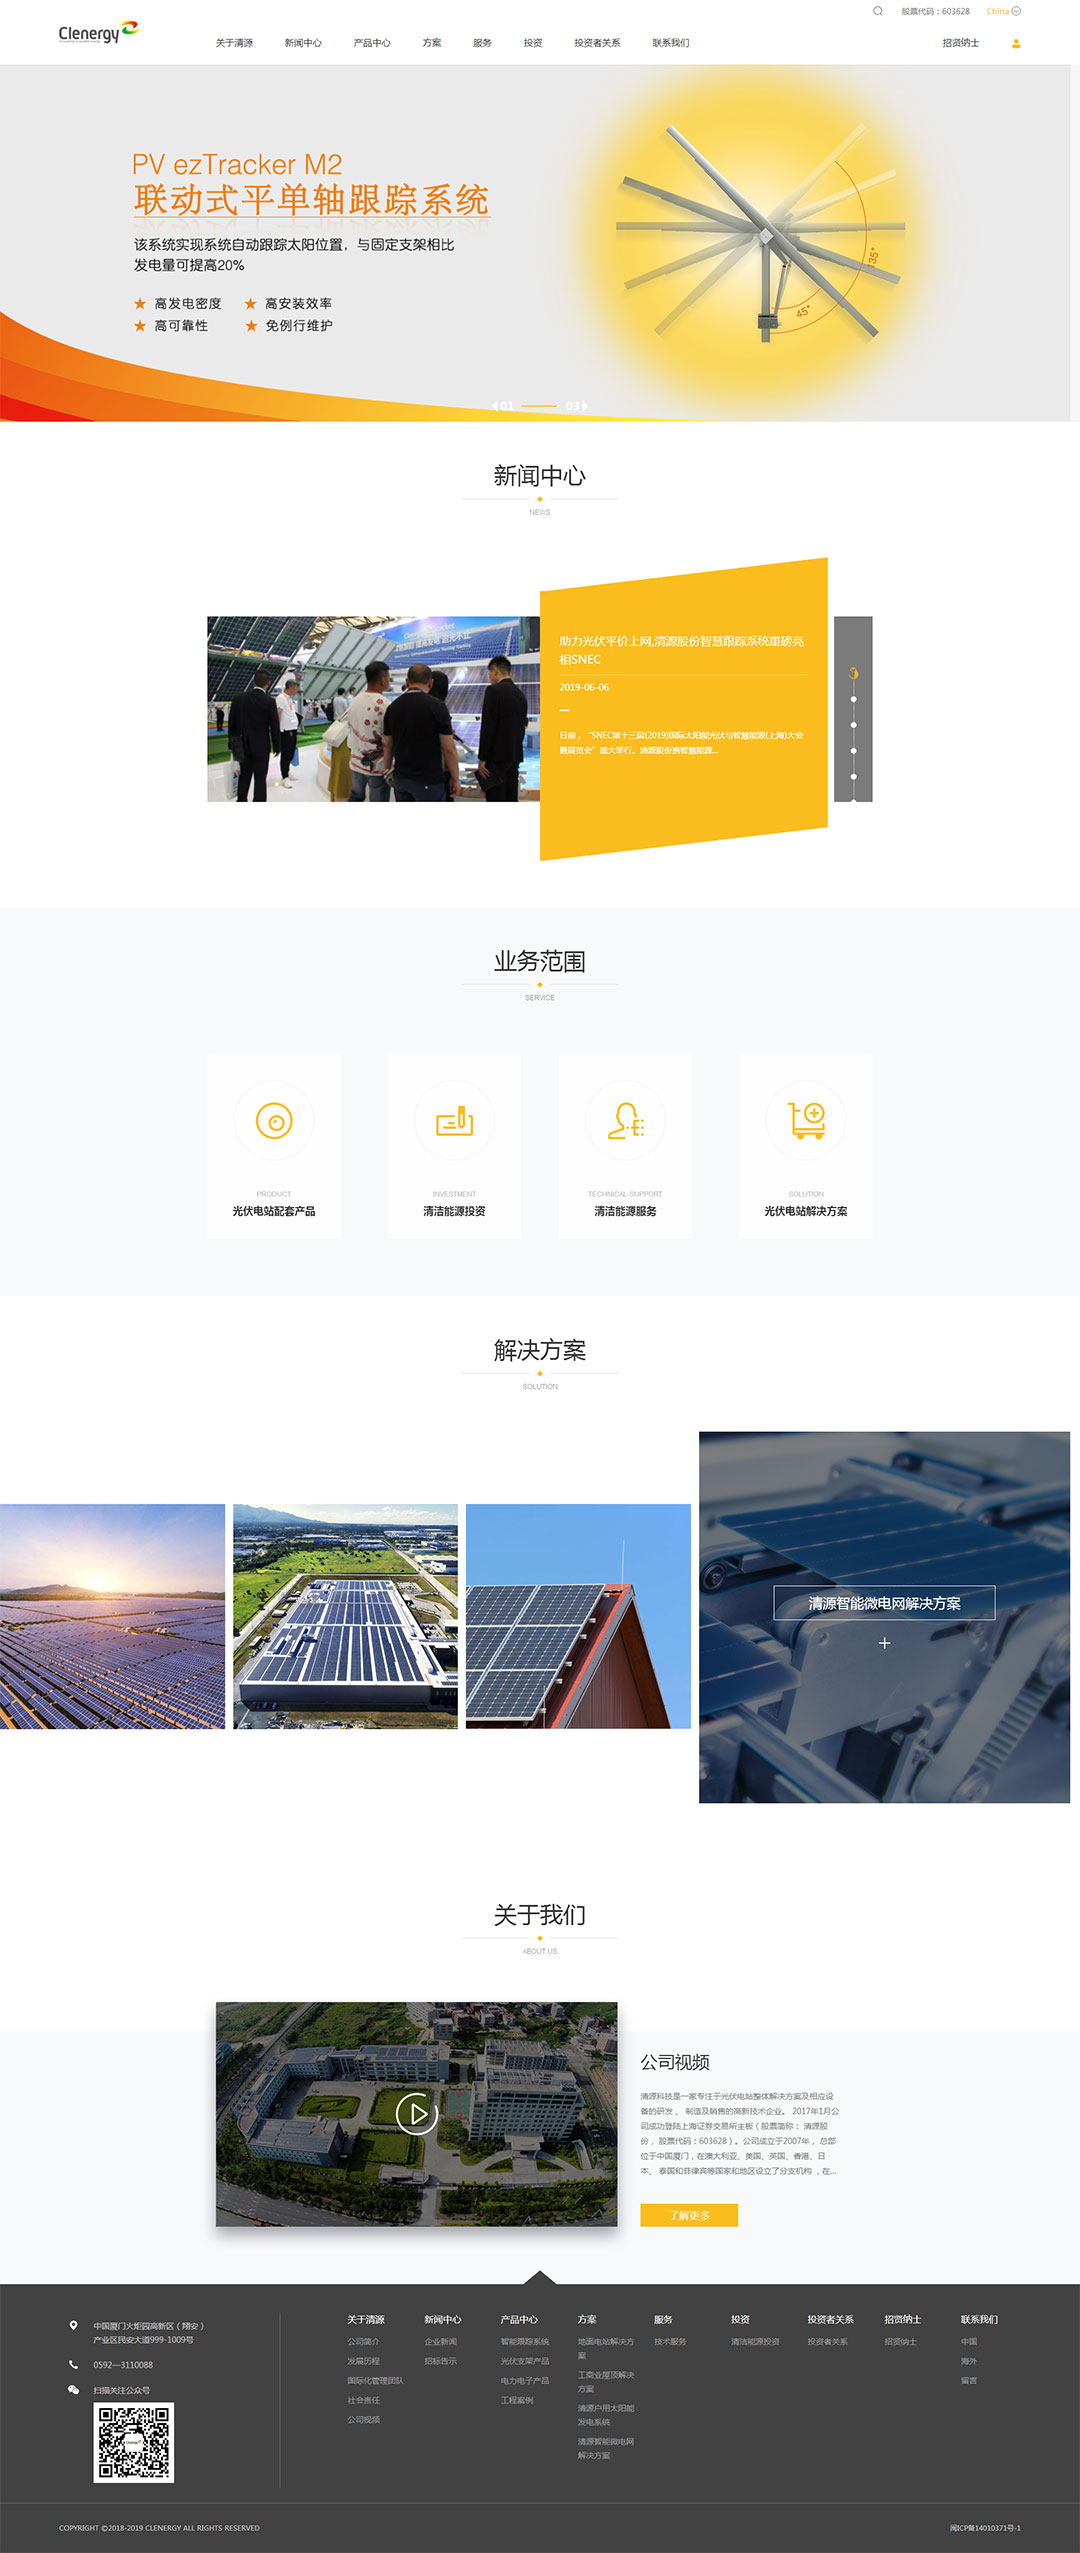 上海网站建设公司-润壤网络正式完成了对清源科技集团网站建设开发